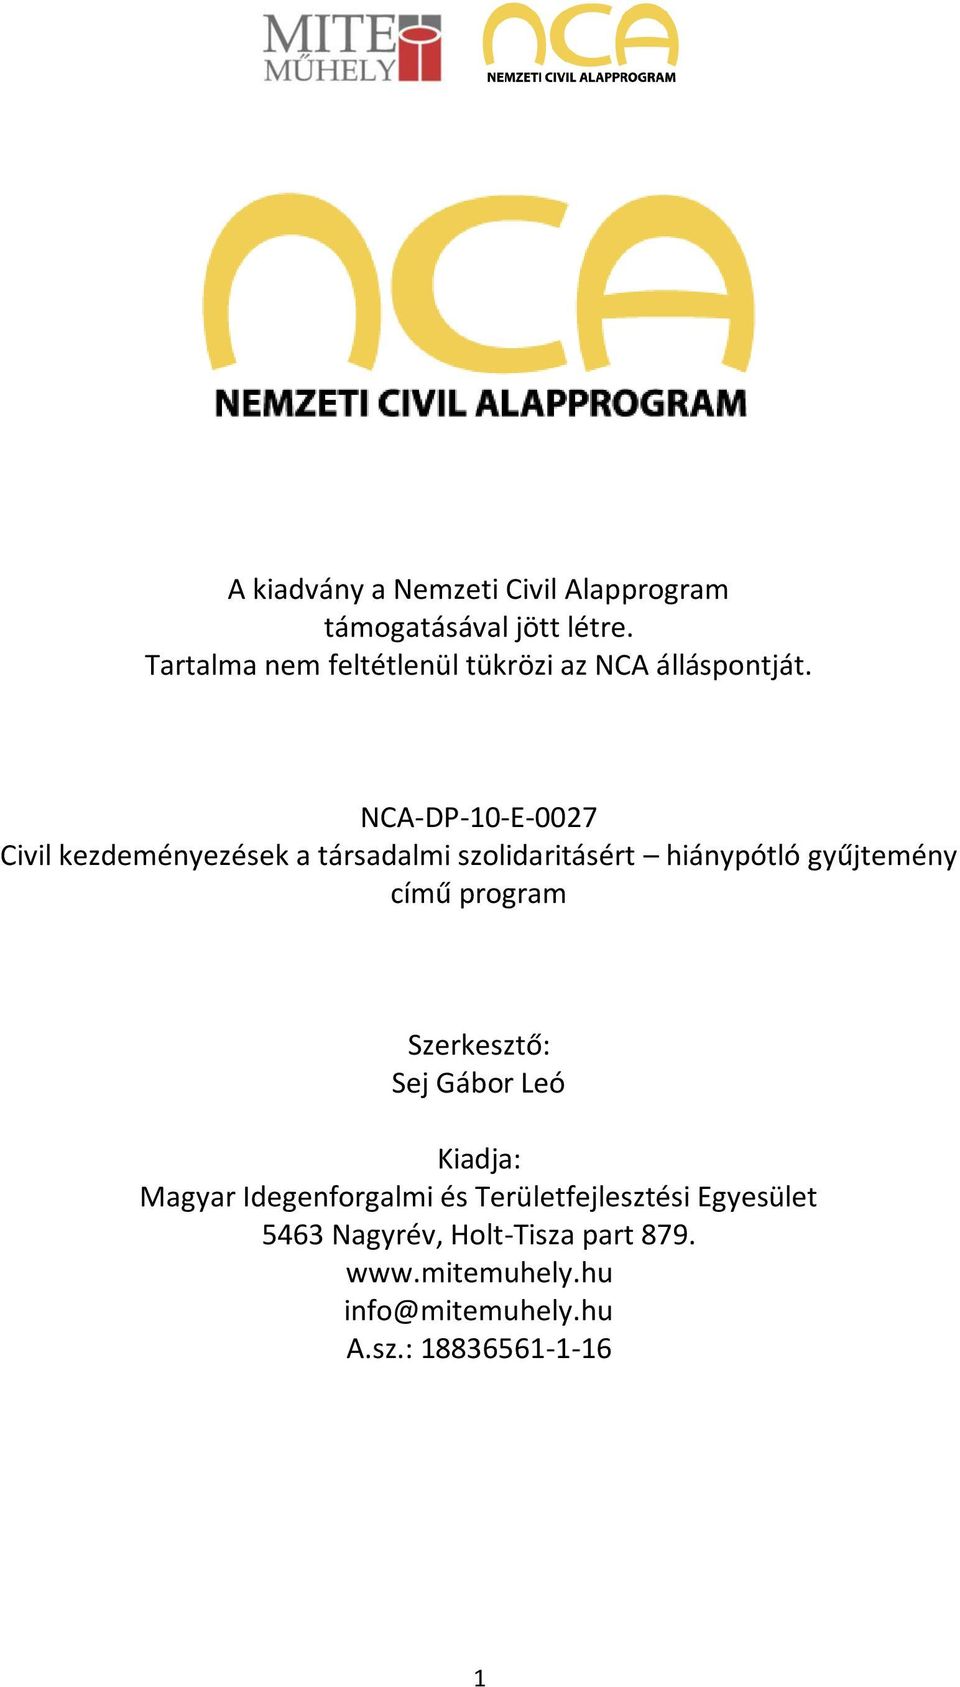 NCA-DP-10-E-0027 Civil kezdeményezések a társadalmi szolidaritásért hiánypótló gyűjtemény című